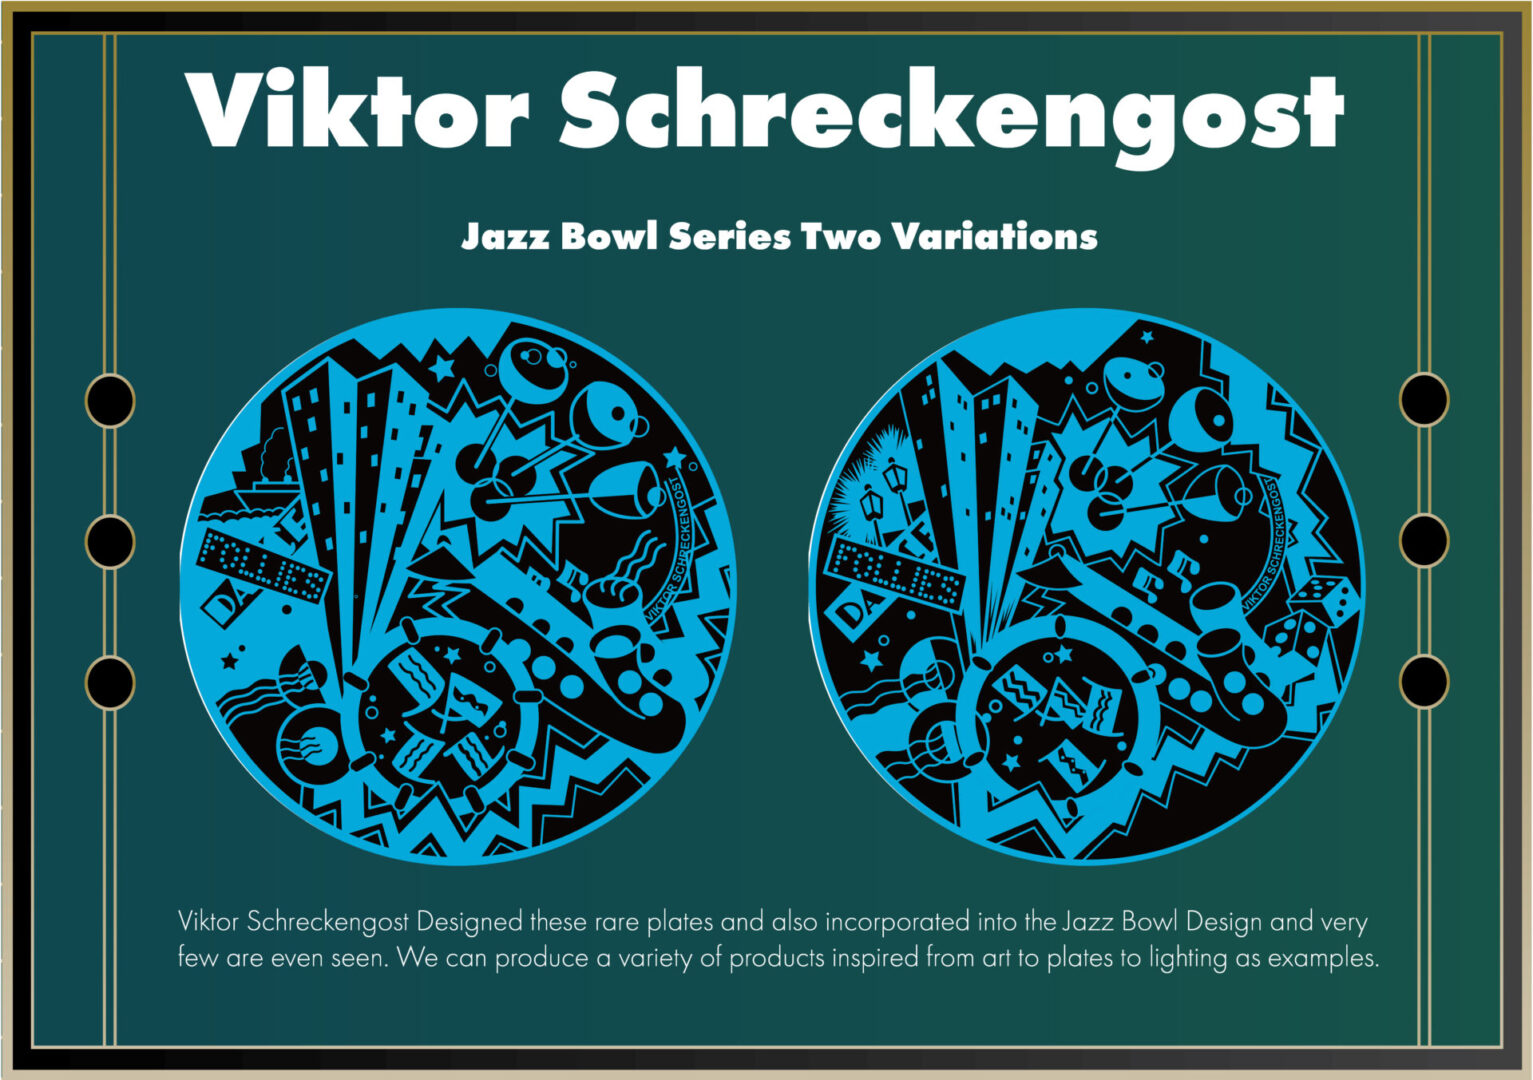 Viktor Schreckengost Jazz Bowl series in two variations